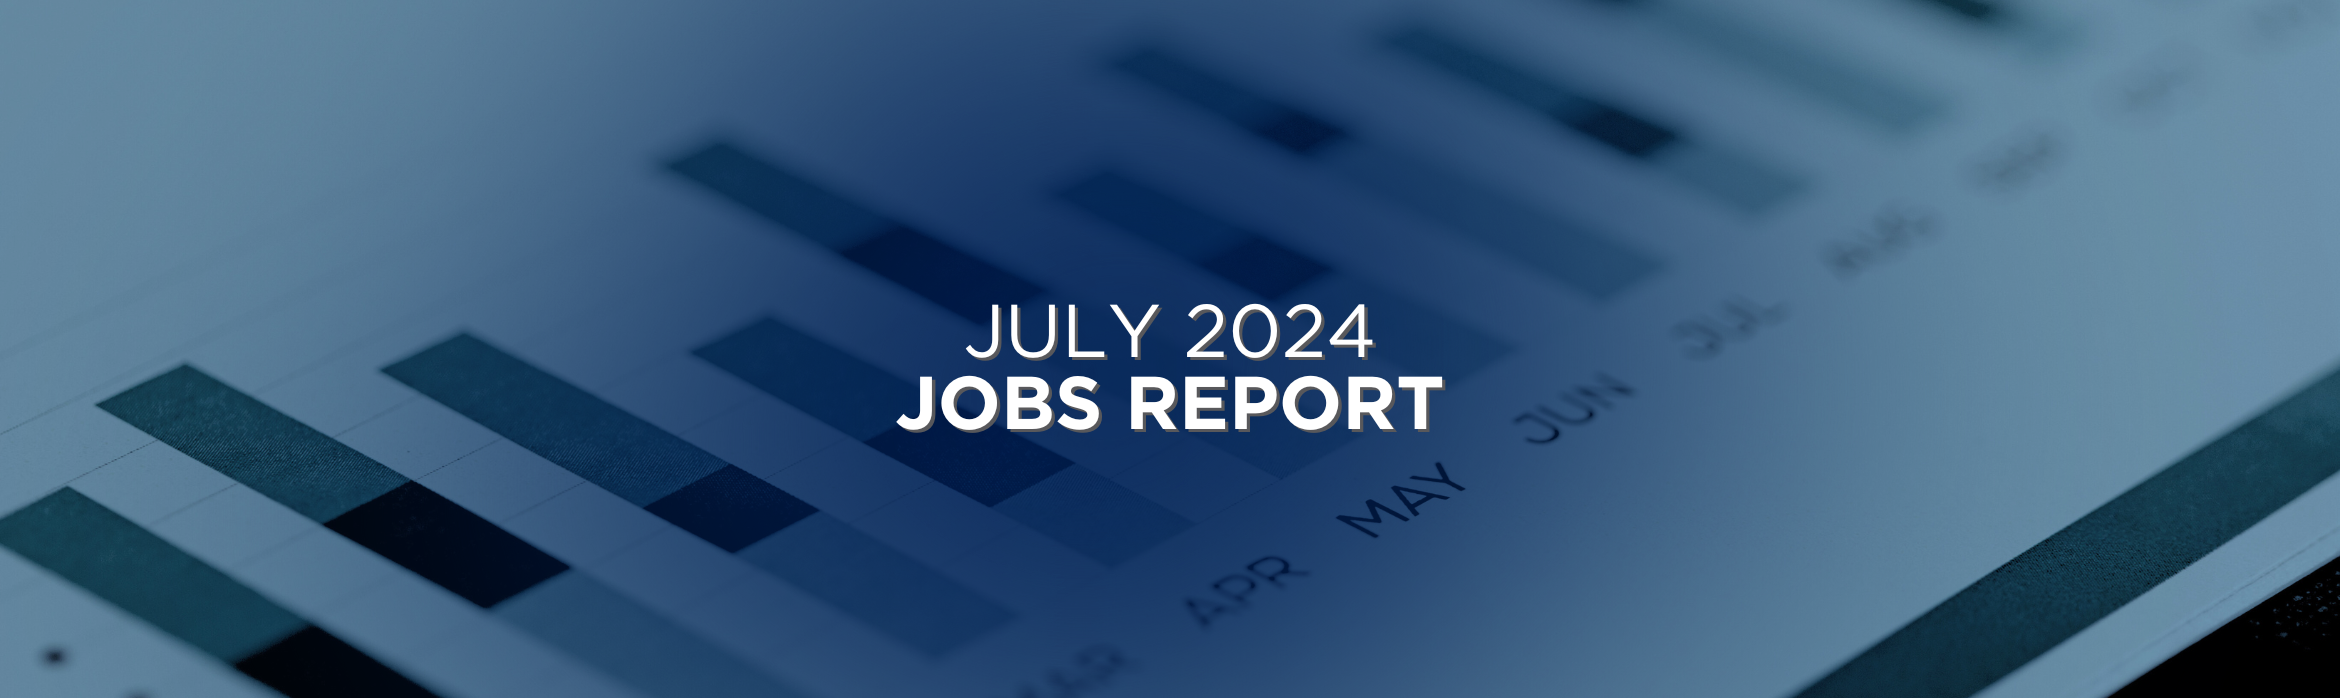 July 2024 Jobs Report Recap